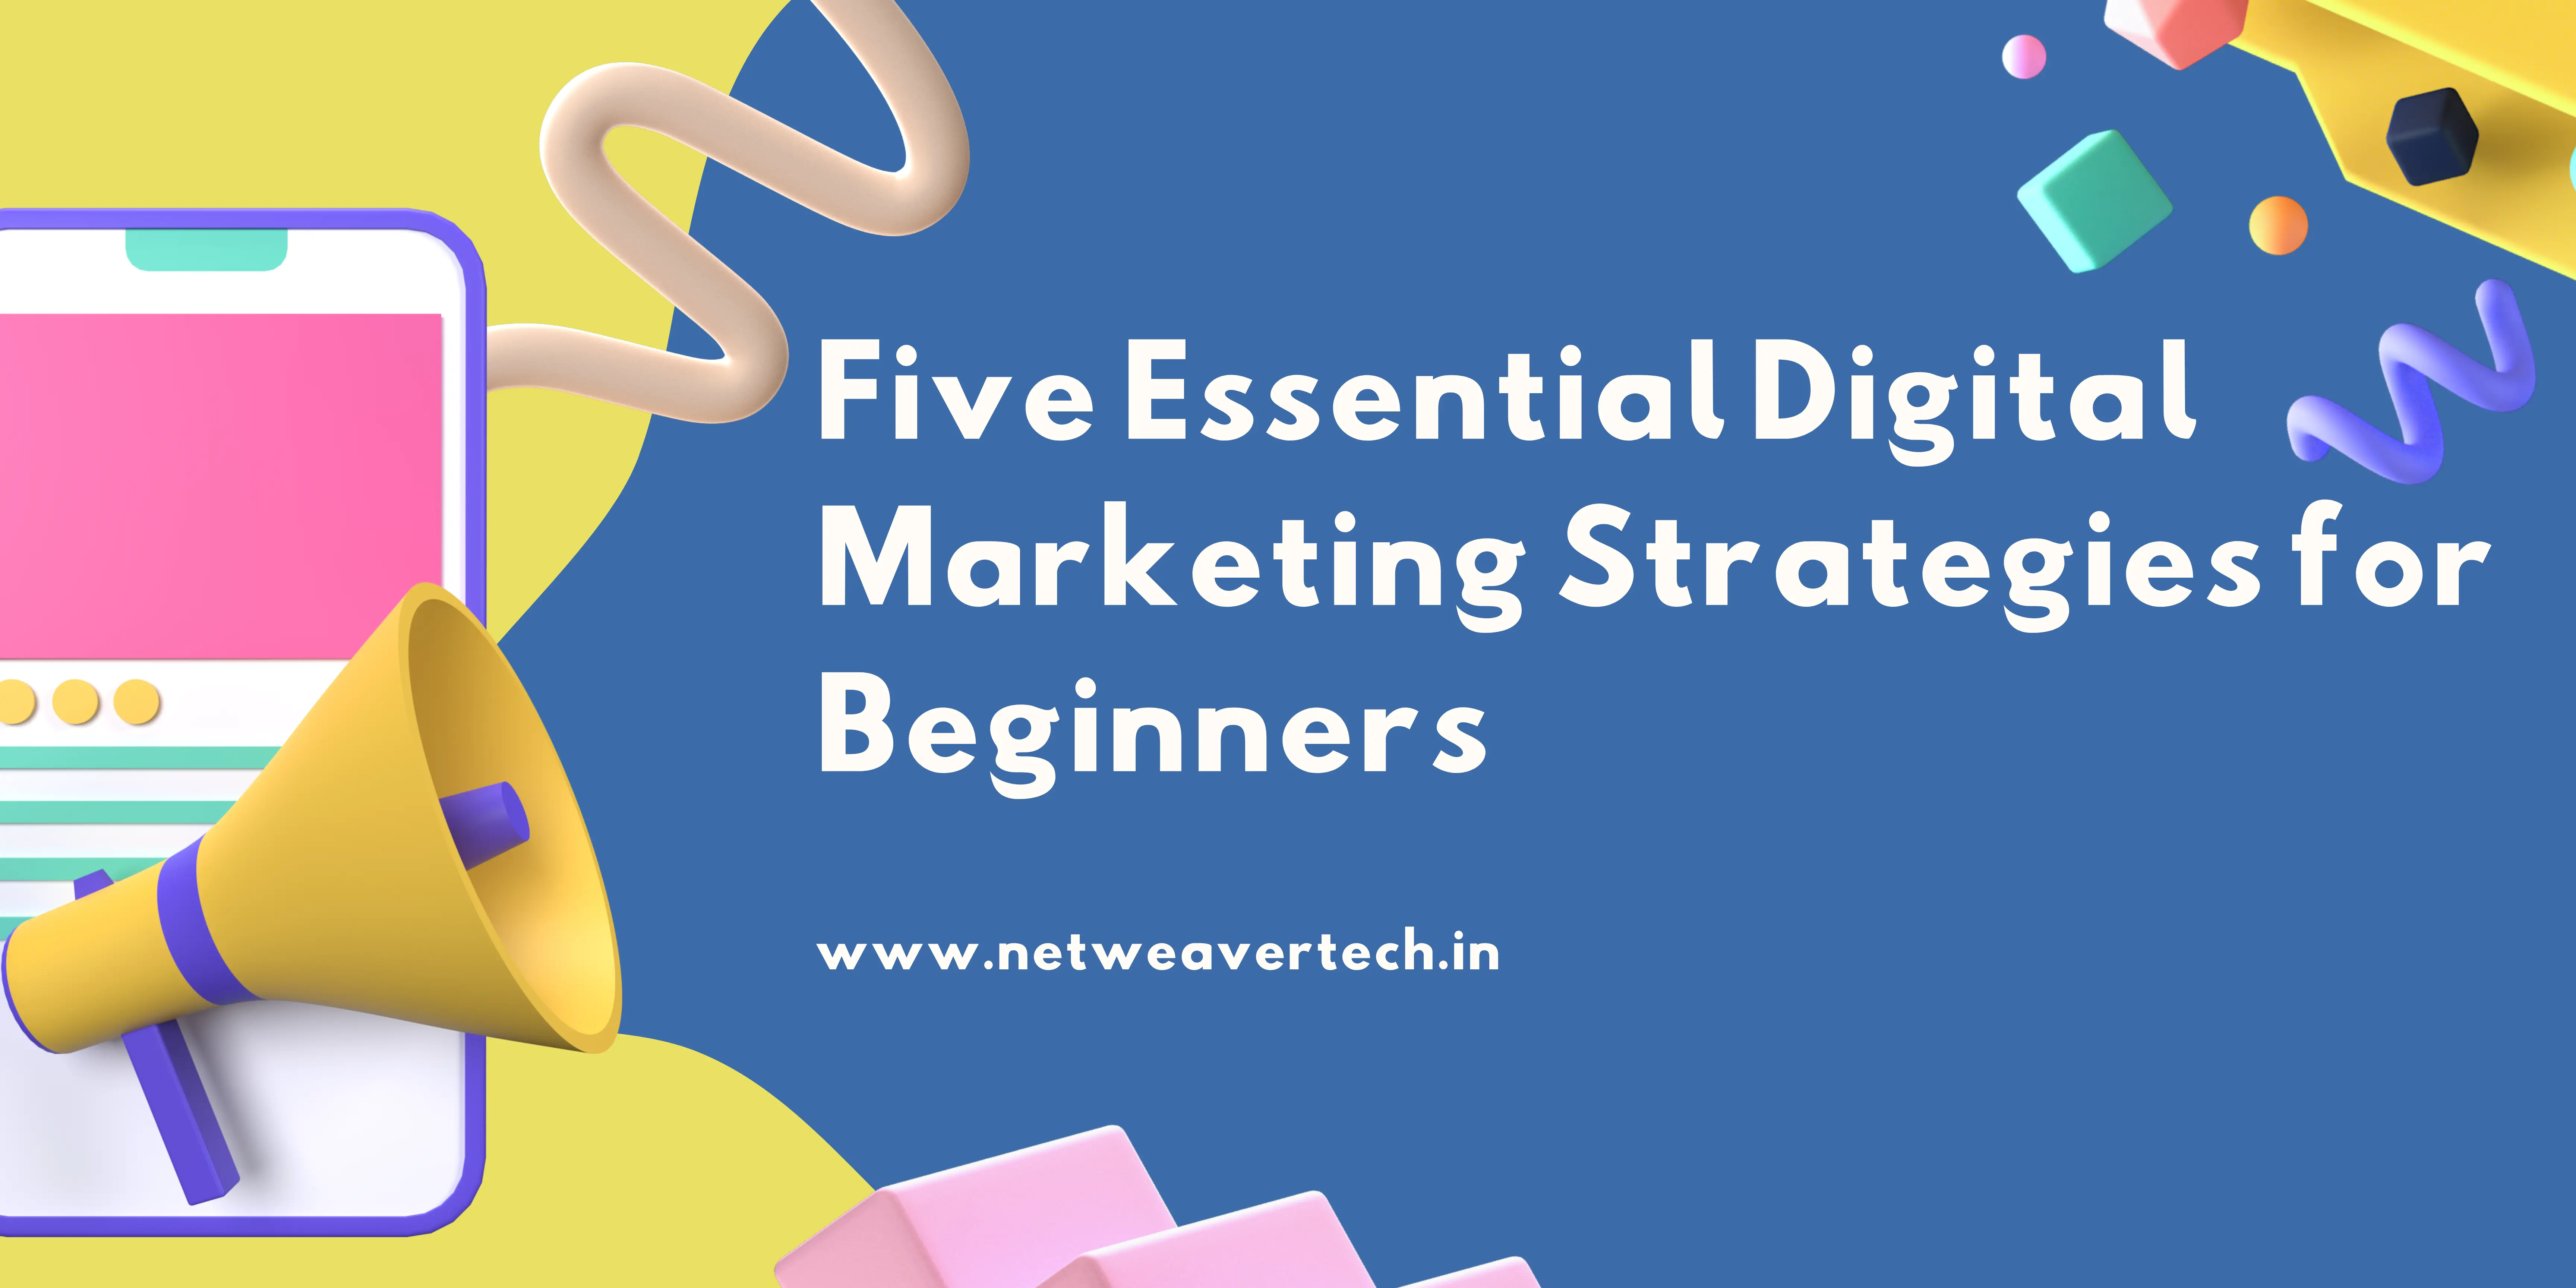 digital marketing strategies